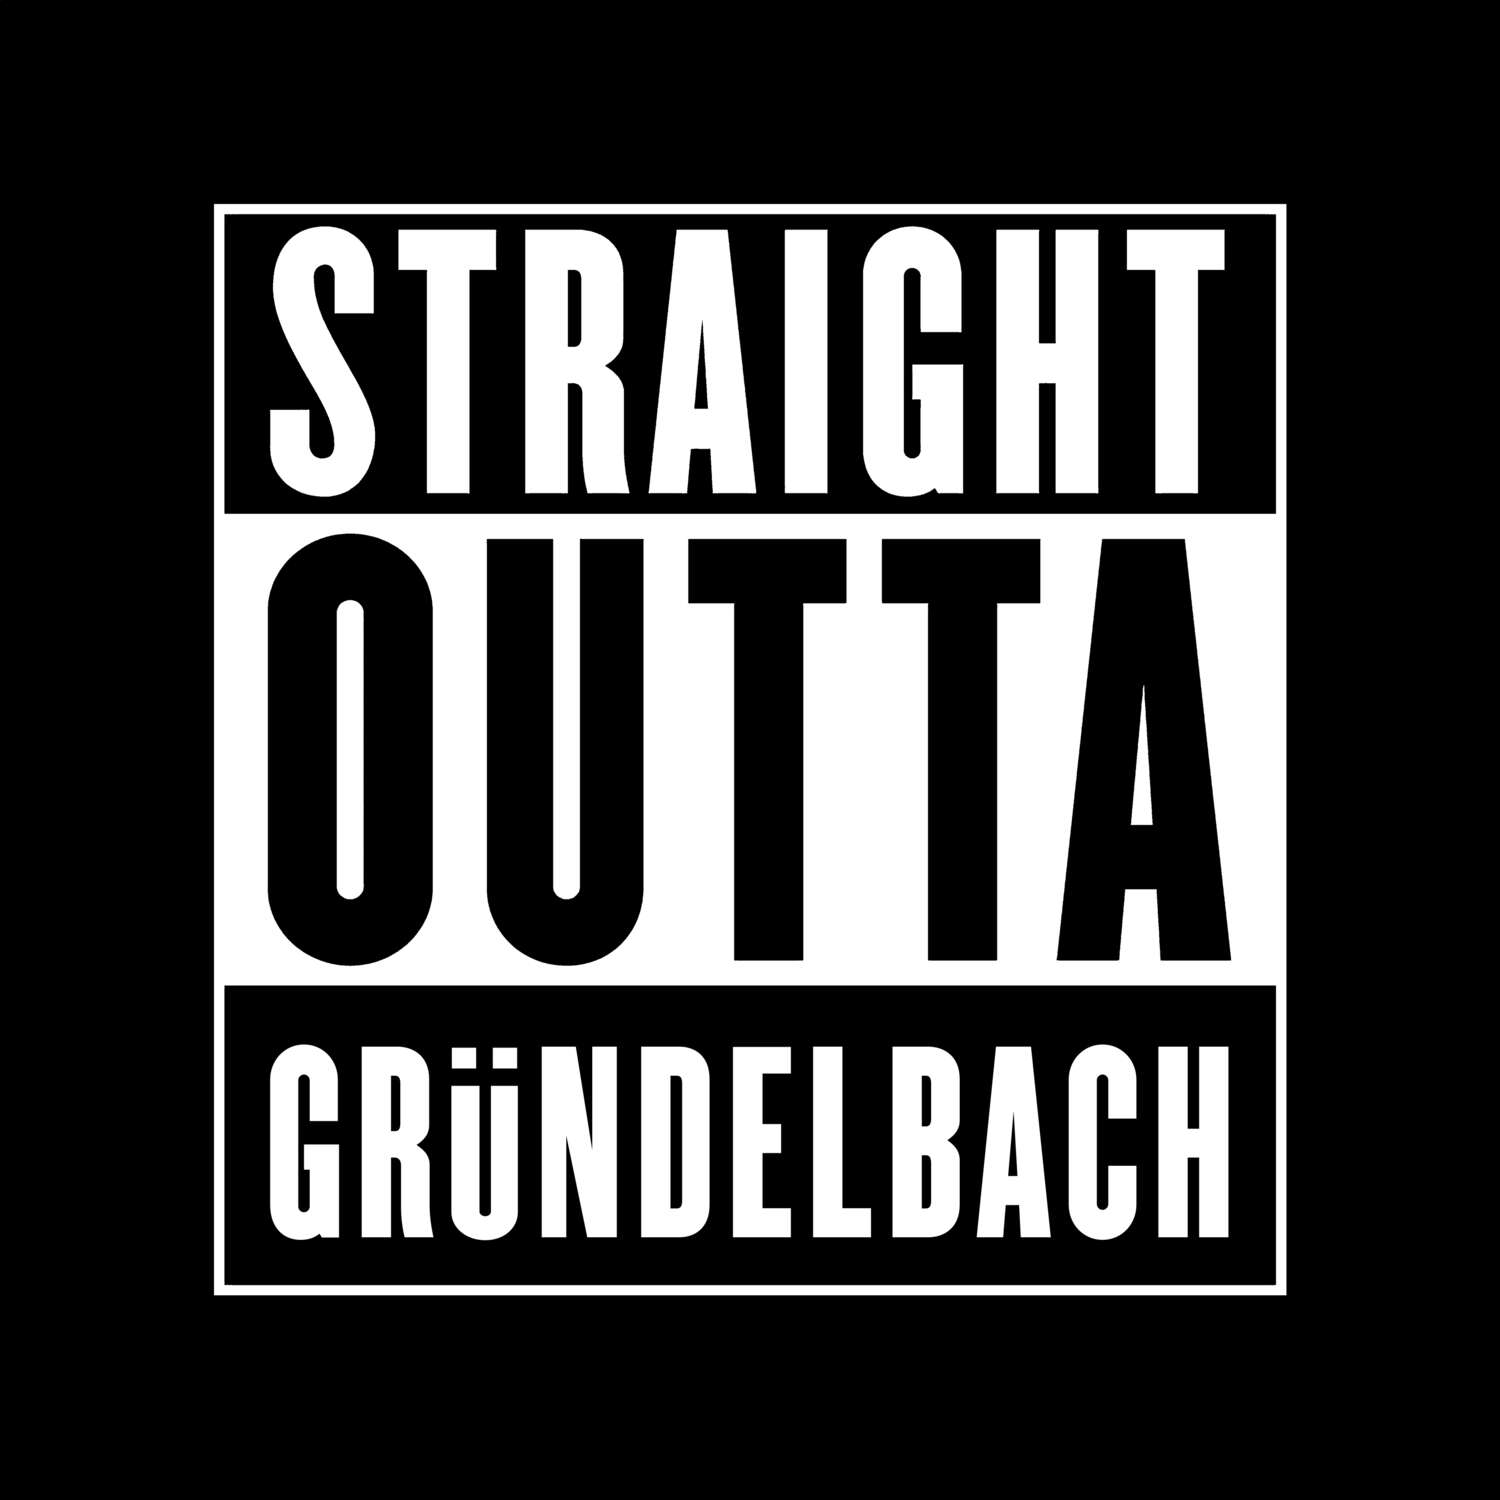 Gründelbach T-Shirt »Straight Outta«